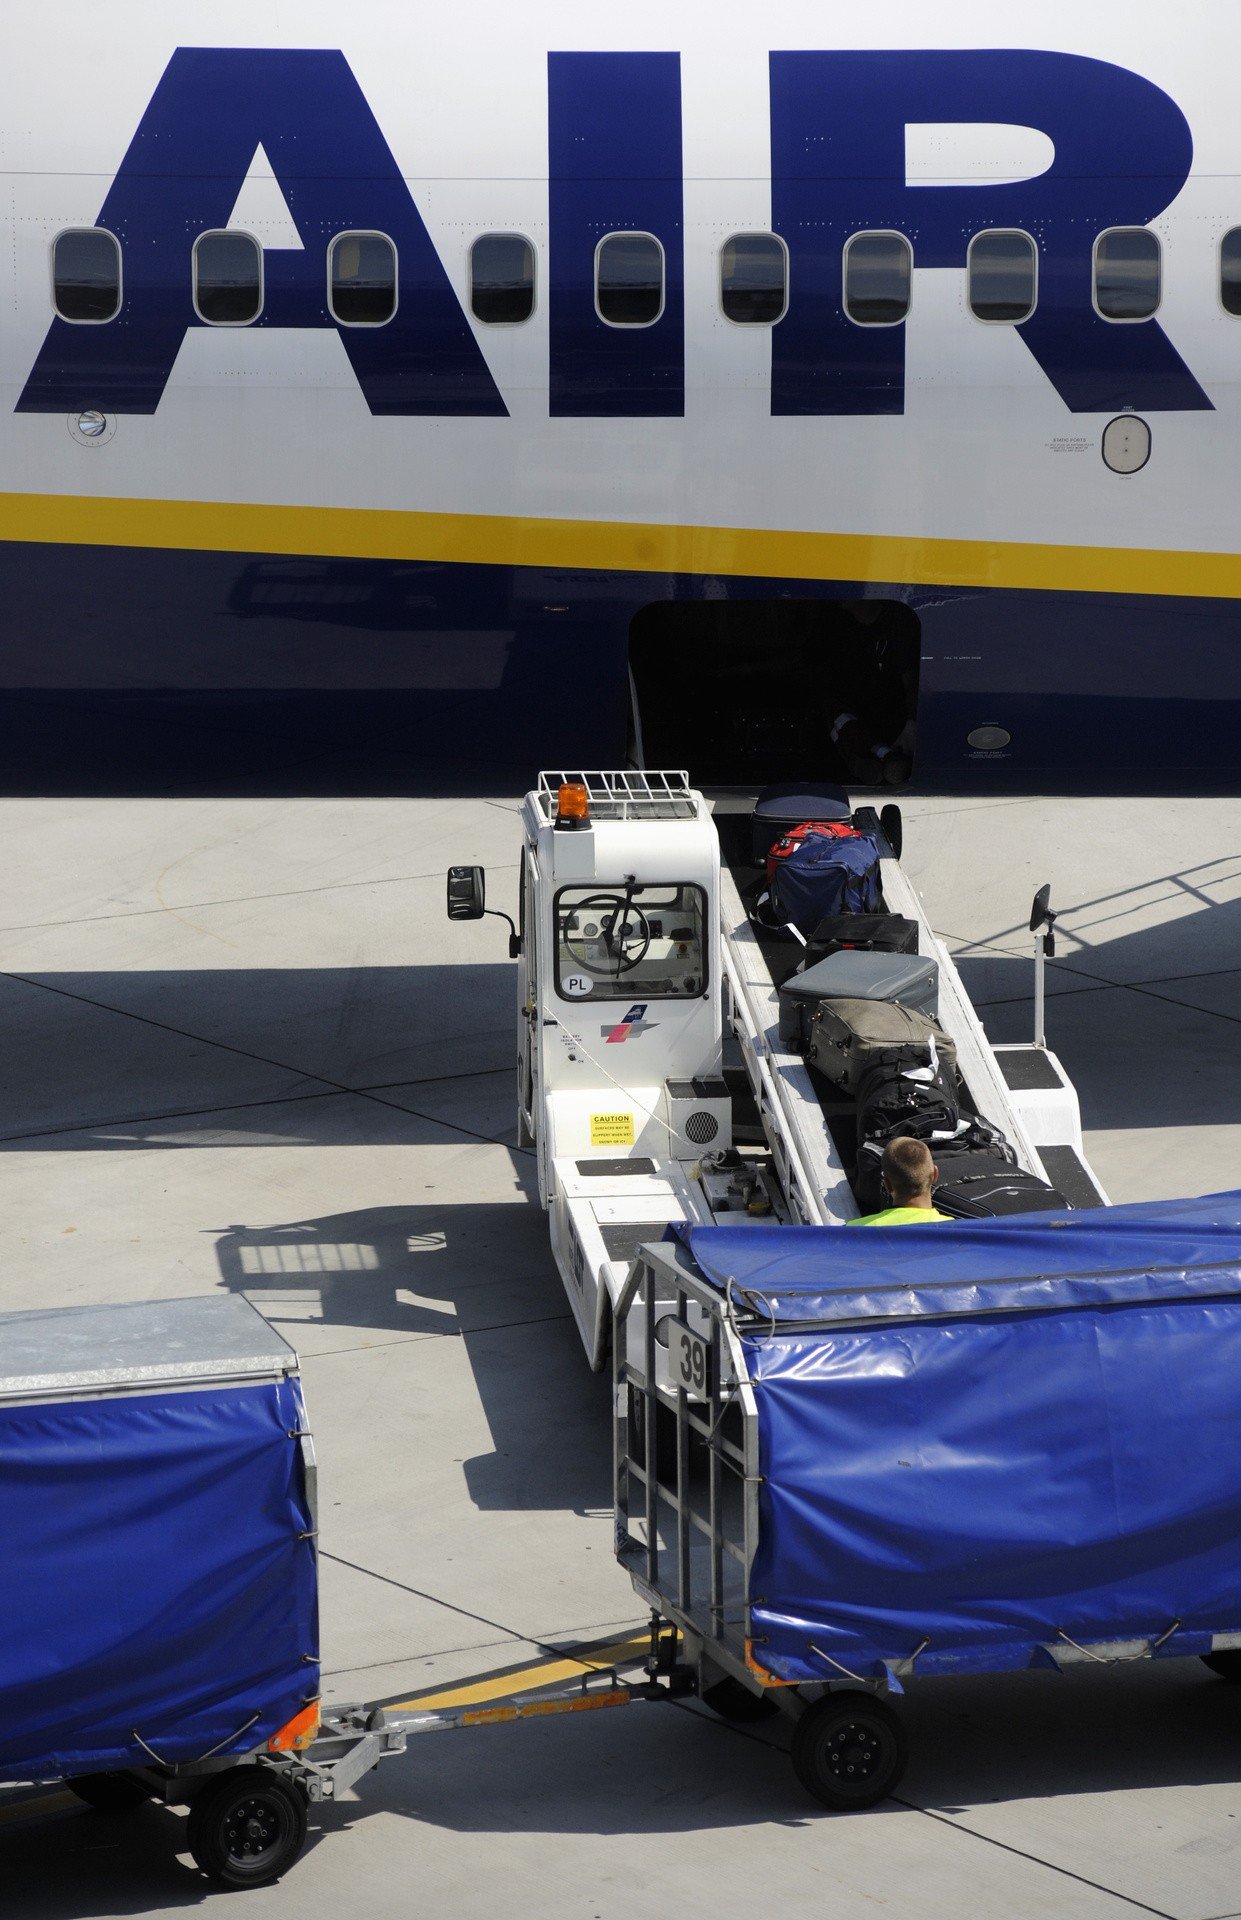 Bagaż podręczny i rejestrowany: Ryanair, Wizzair NOWE ZASADY LOT, Enter  Air, Small Planet, Smart Wings. Sprawdź: bagaż do samolotu LIMITY |  Tygodnik Ostrołęcki